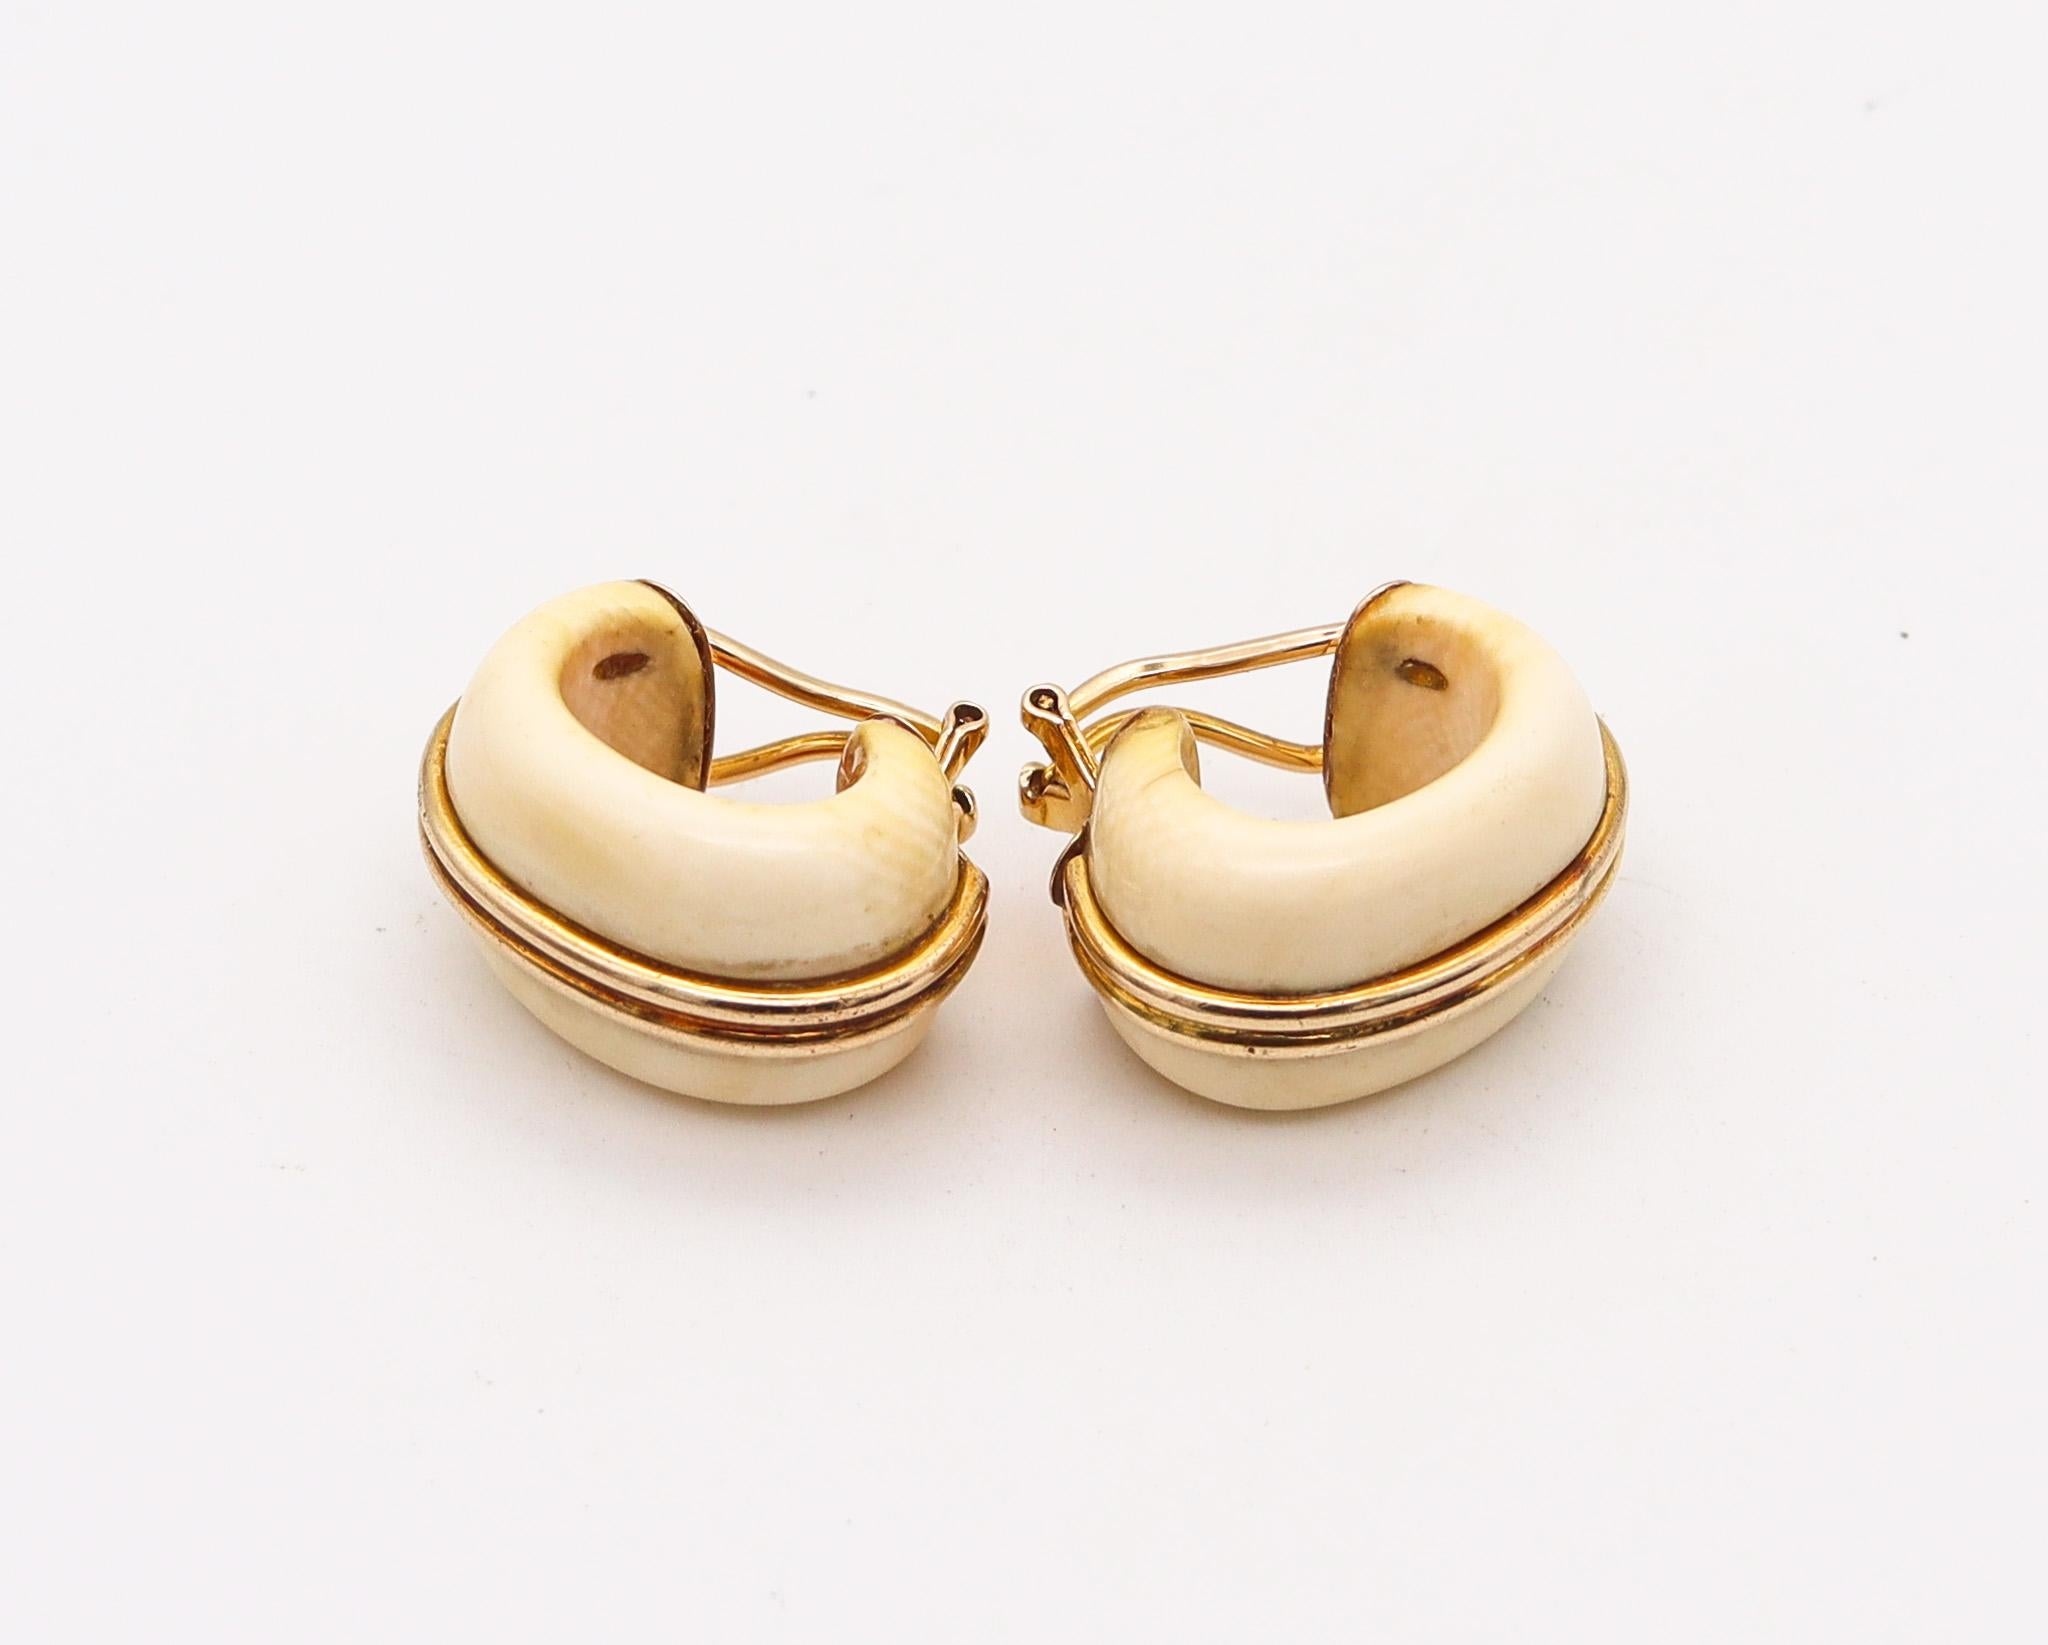 Ein italienischer modernistischer Reif-Ohrring.

Modernes Paar Creolen im Vintage-Stil, das um 1970 in Italien hergestellt wurde. Sie wurden aus massivem Gelbgold von 14 Karat gefertigt und mit natürlichen Schnitzereien versehen. Ausgestattet mit